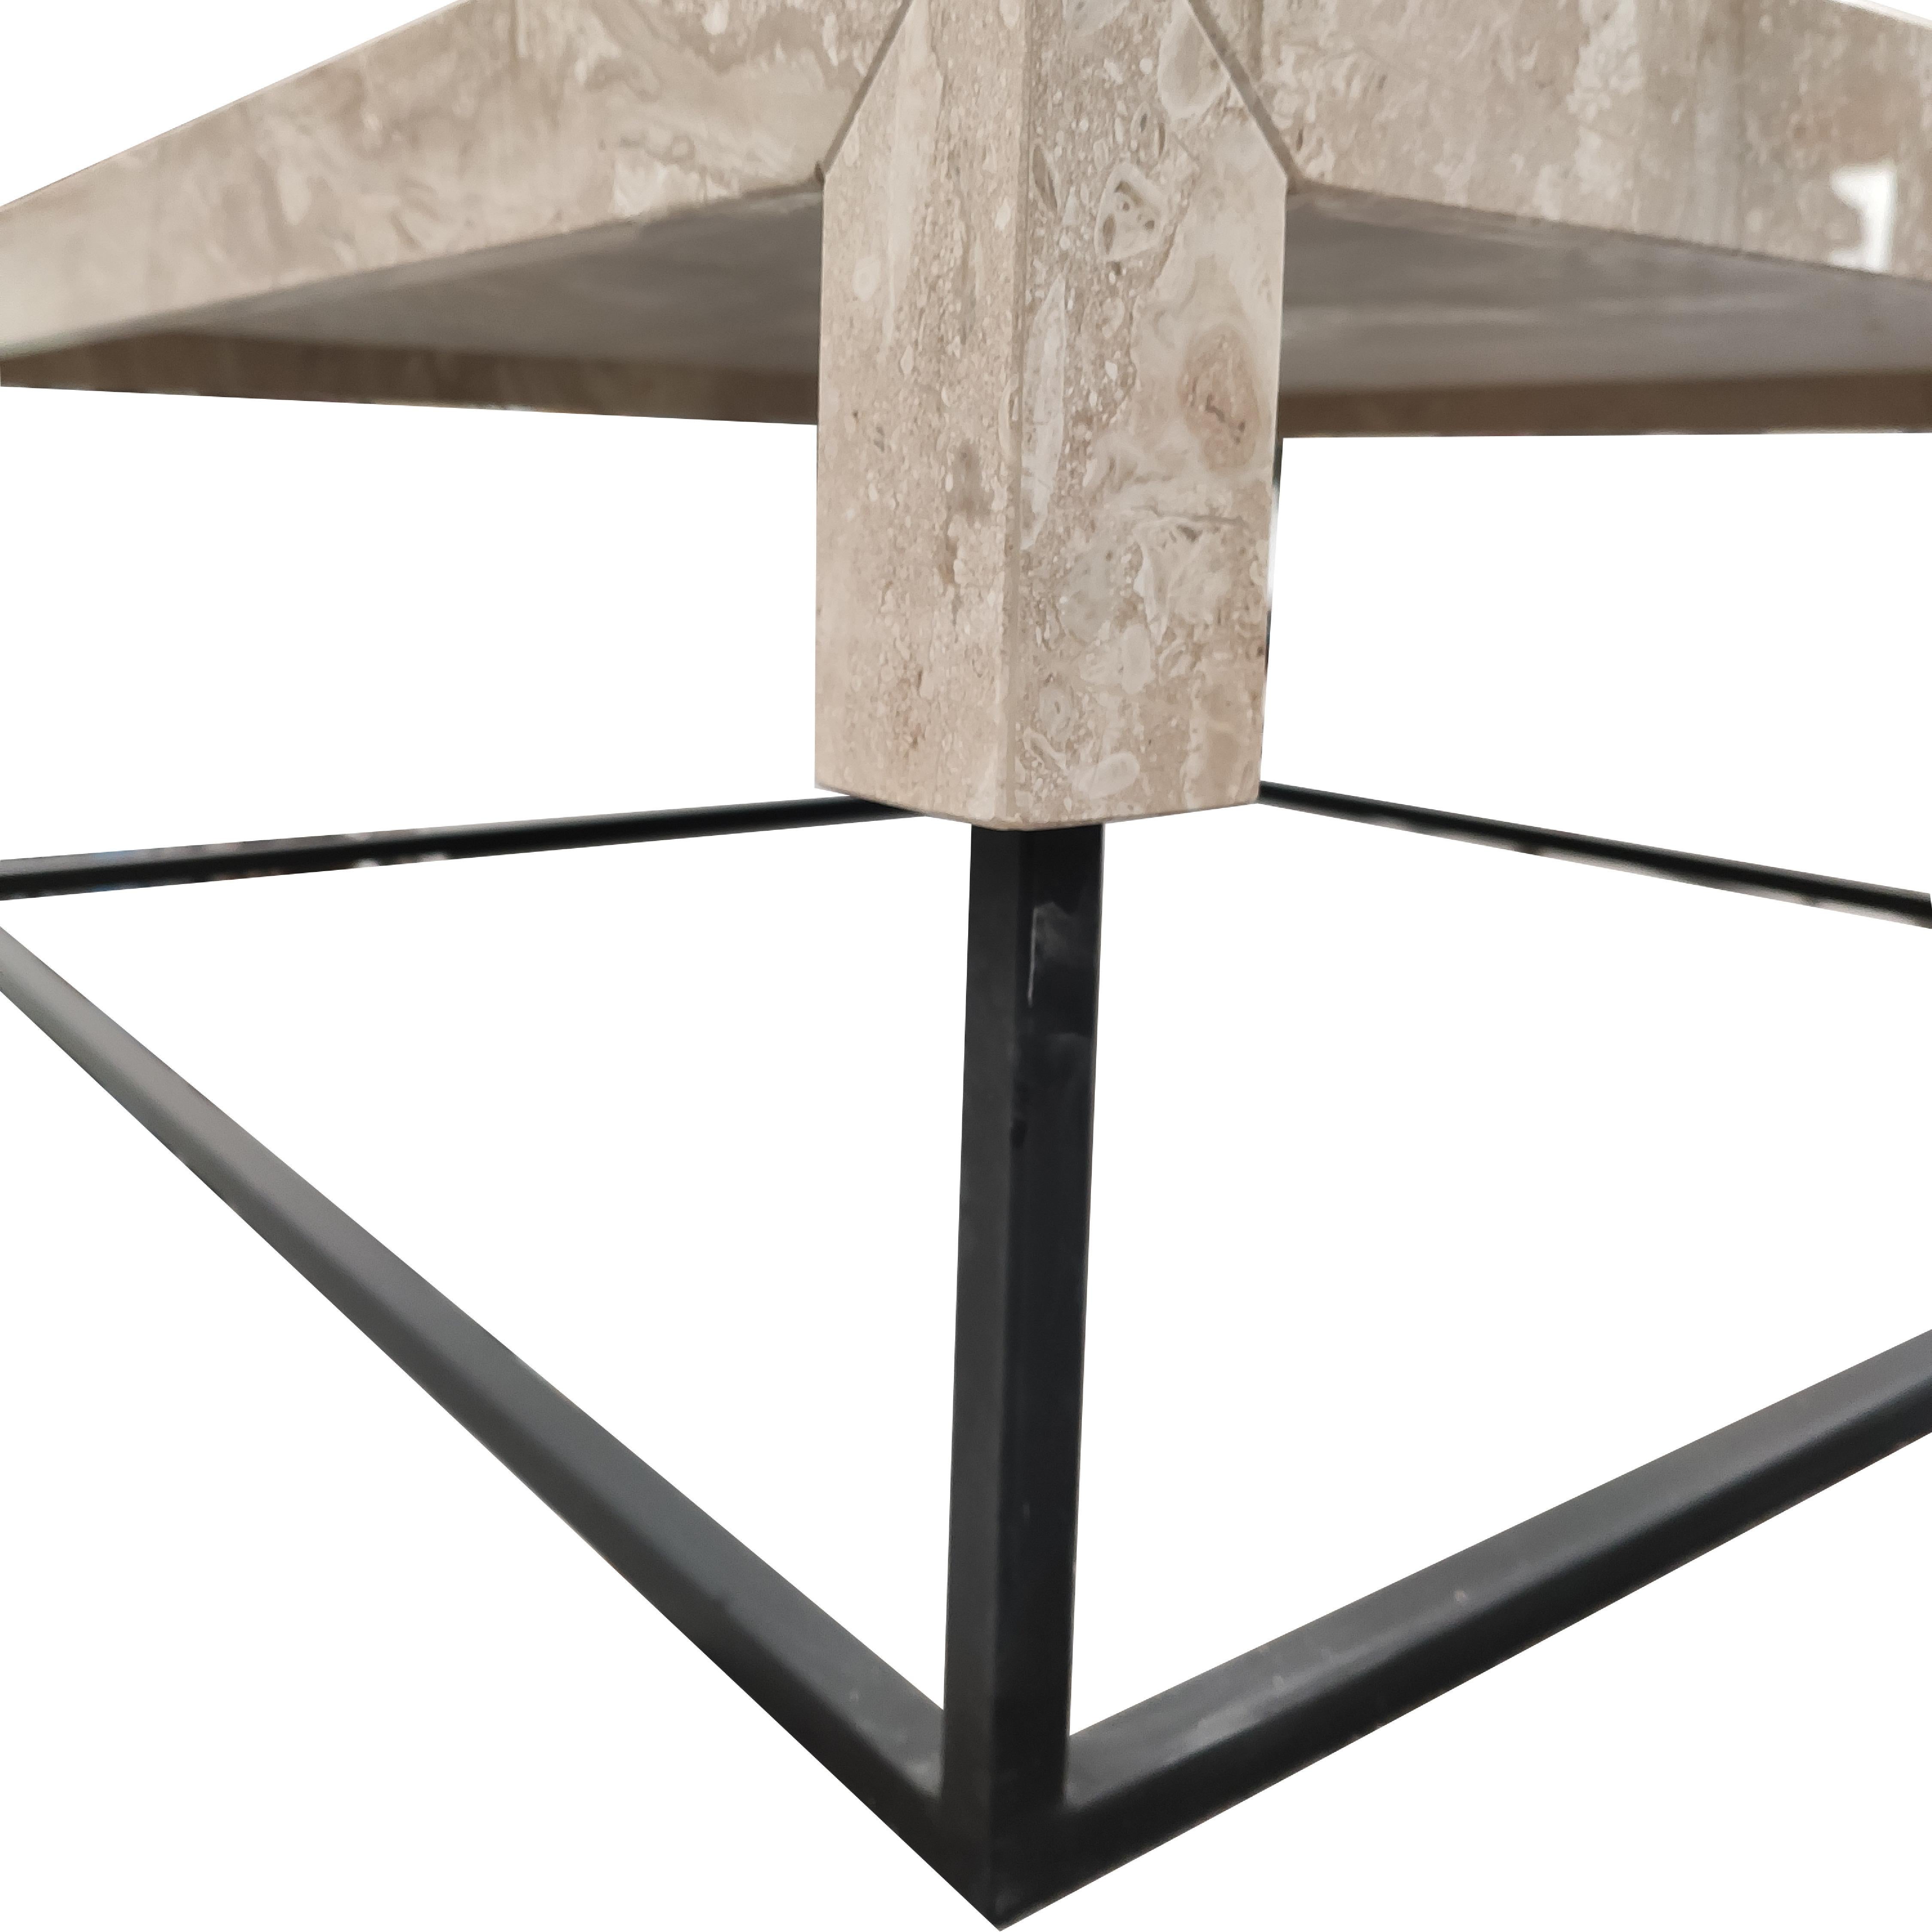 La mesa de centro Daino Reale TOSSA es una pieza de mobiliario de diseño contemporáneo en mármol. Es una mesa de centro de mármol Daino Reale, un mármol de la isla italiana de Cerdeña.

La mesa consiste en una estructura metálica pintada de negro,